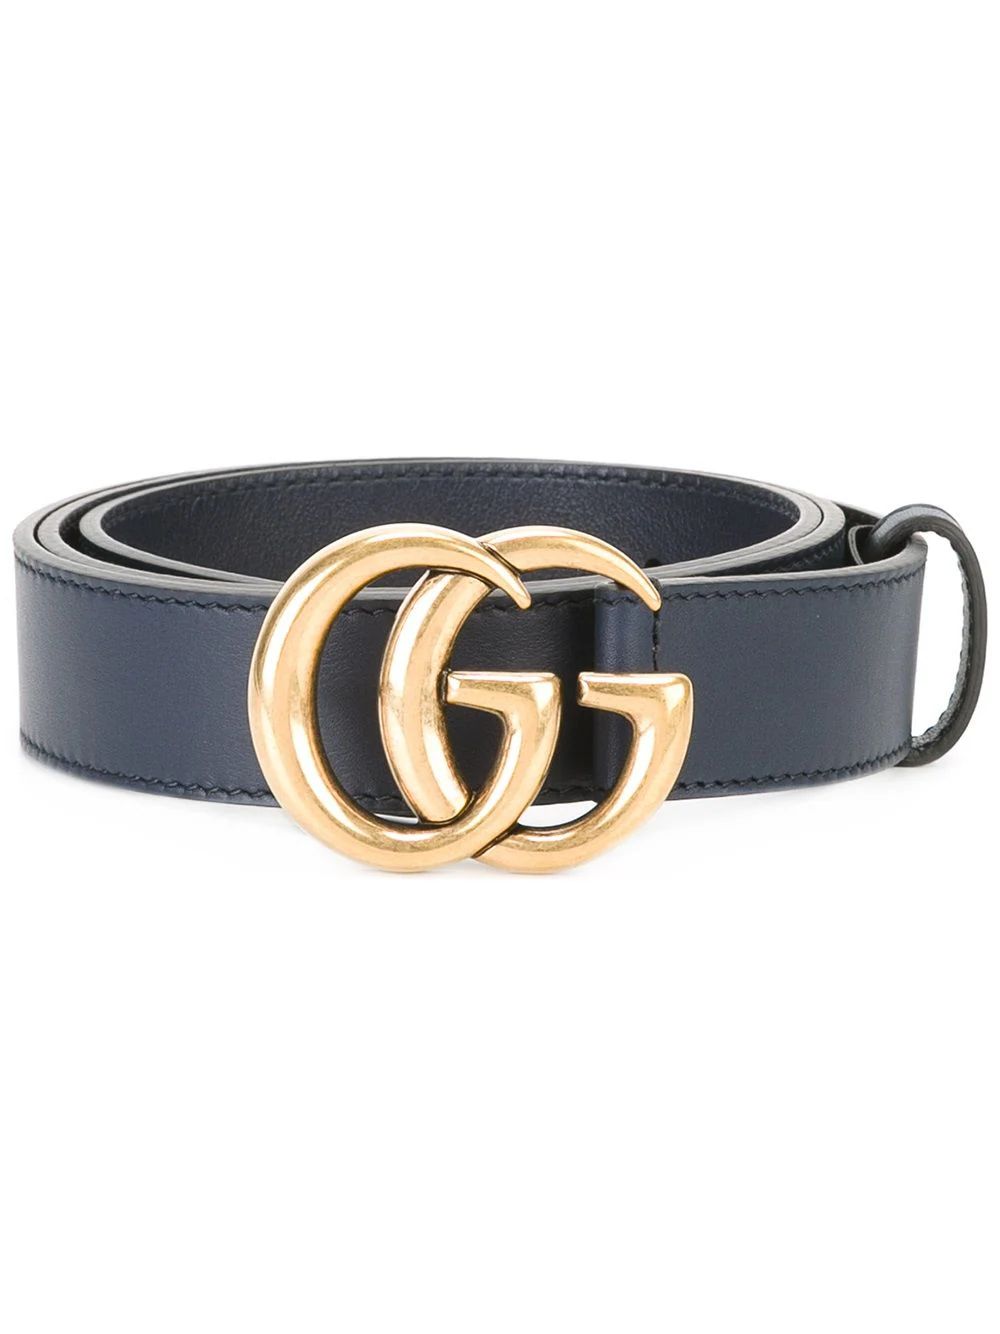 Gucci interlocking GG buckle belt - Blue | FarFetch US